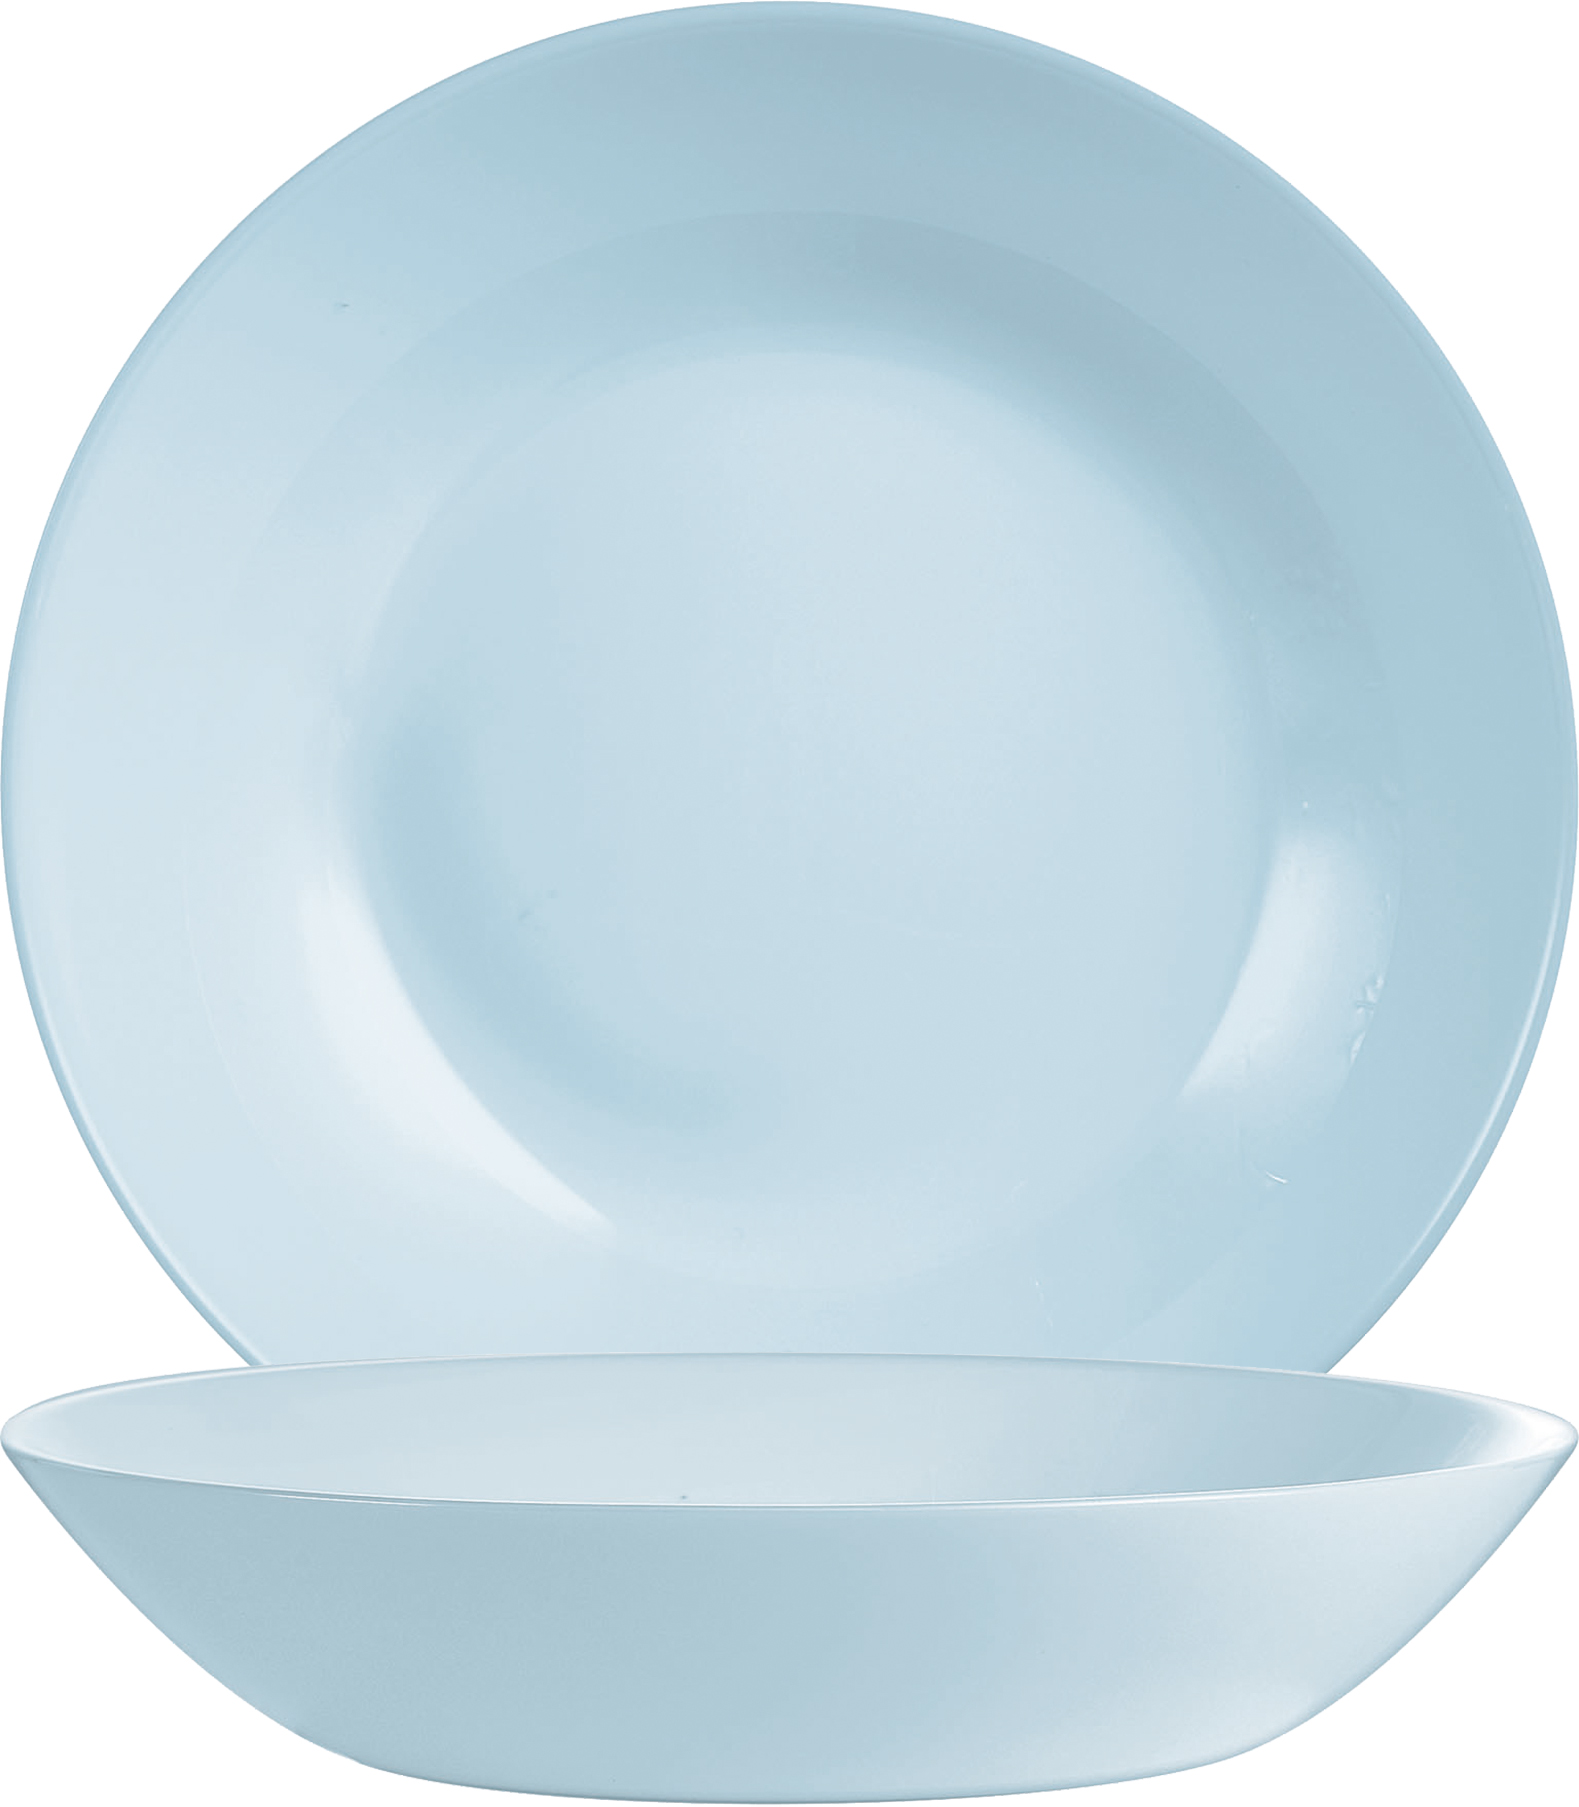 Suppenteller DIWALI, Farbe: Paradise blue, Durchmesser: 20 cm, Coupteller - ohne breite Fahne Opalglas (gehärtet)